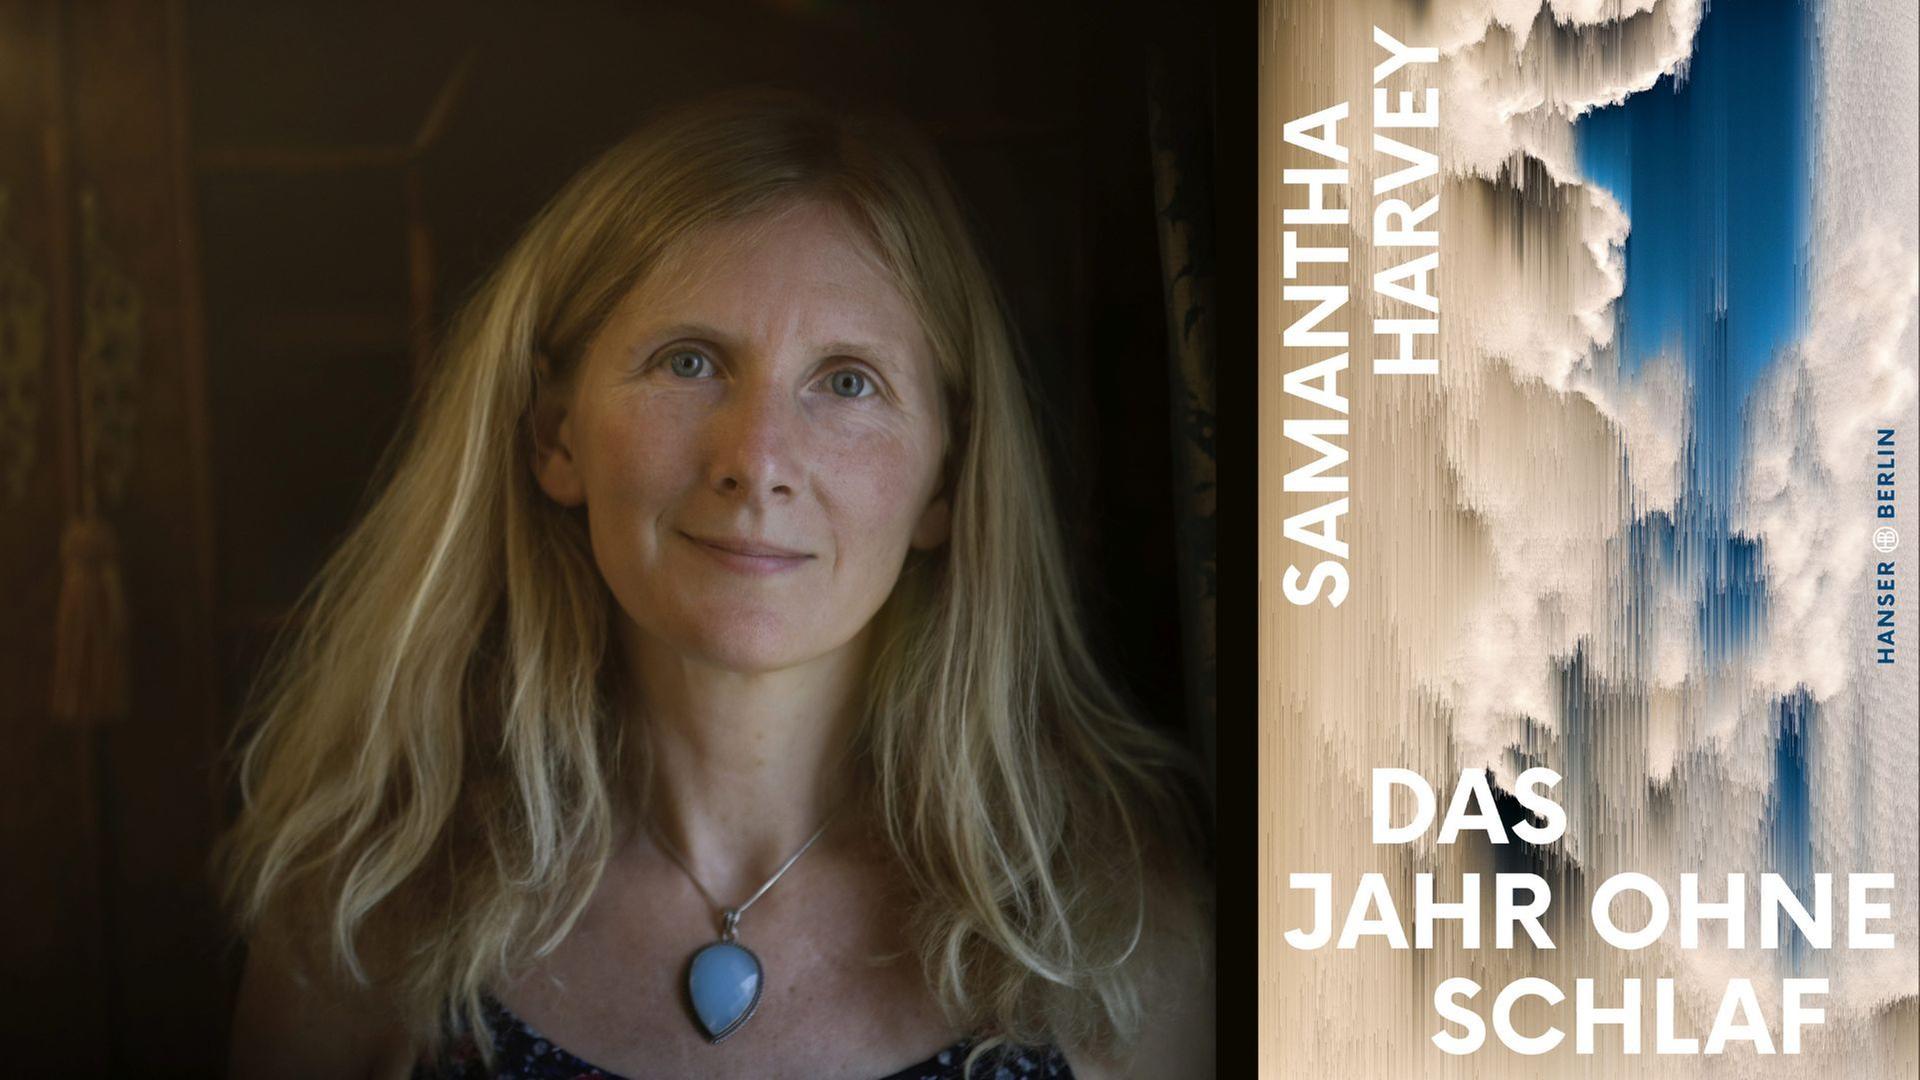 Samantha Harvey: "Das Jahr ohne Schlaf"